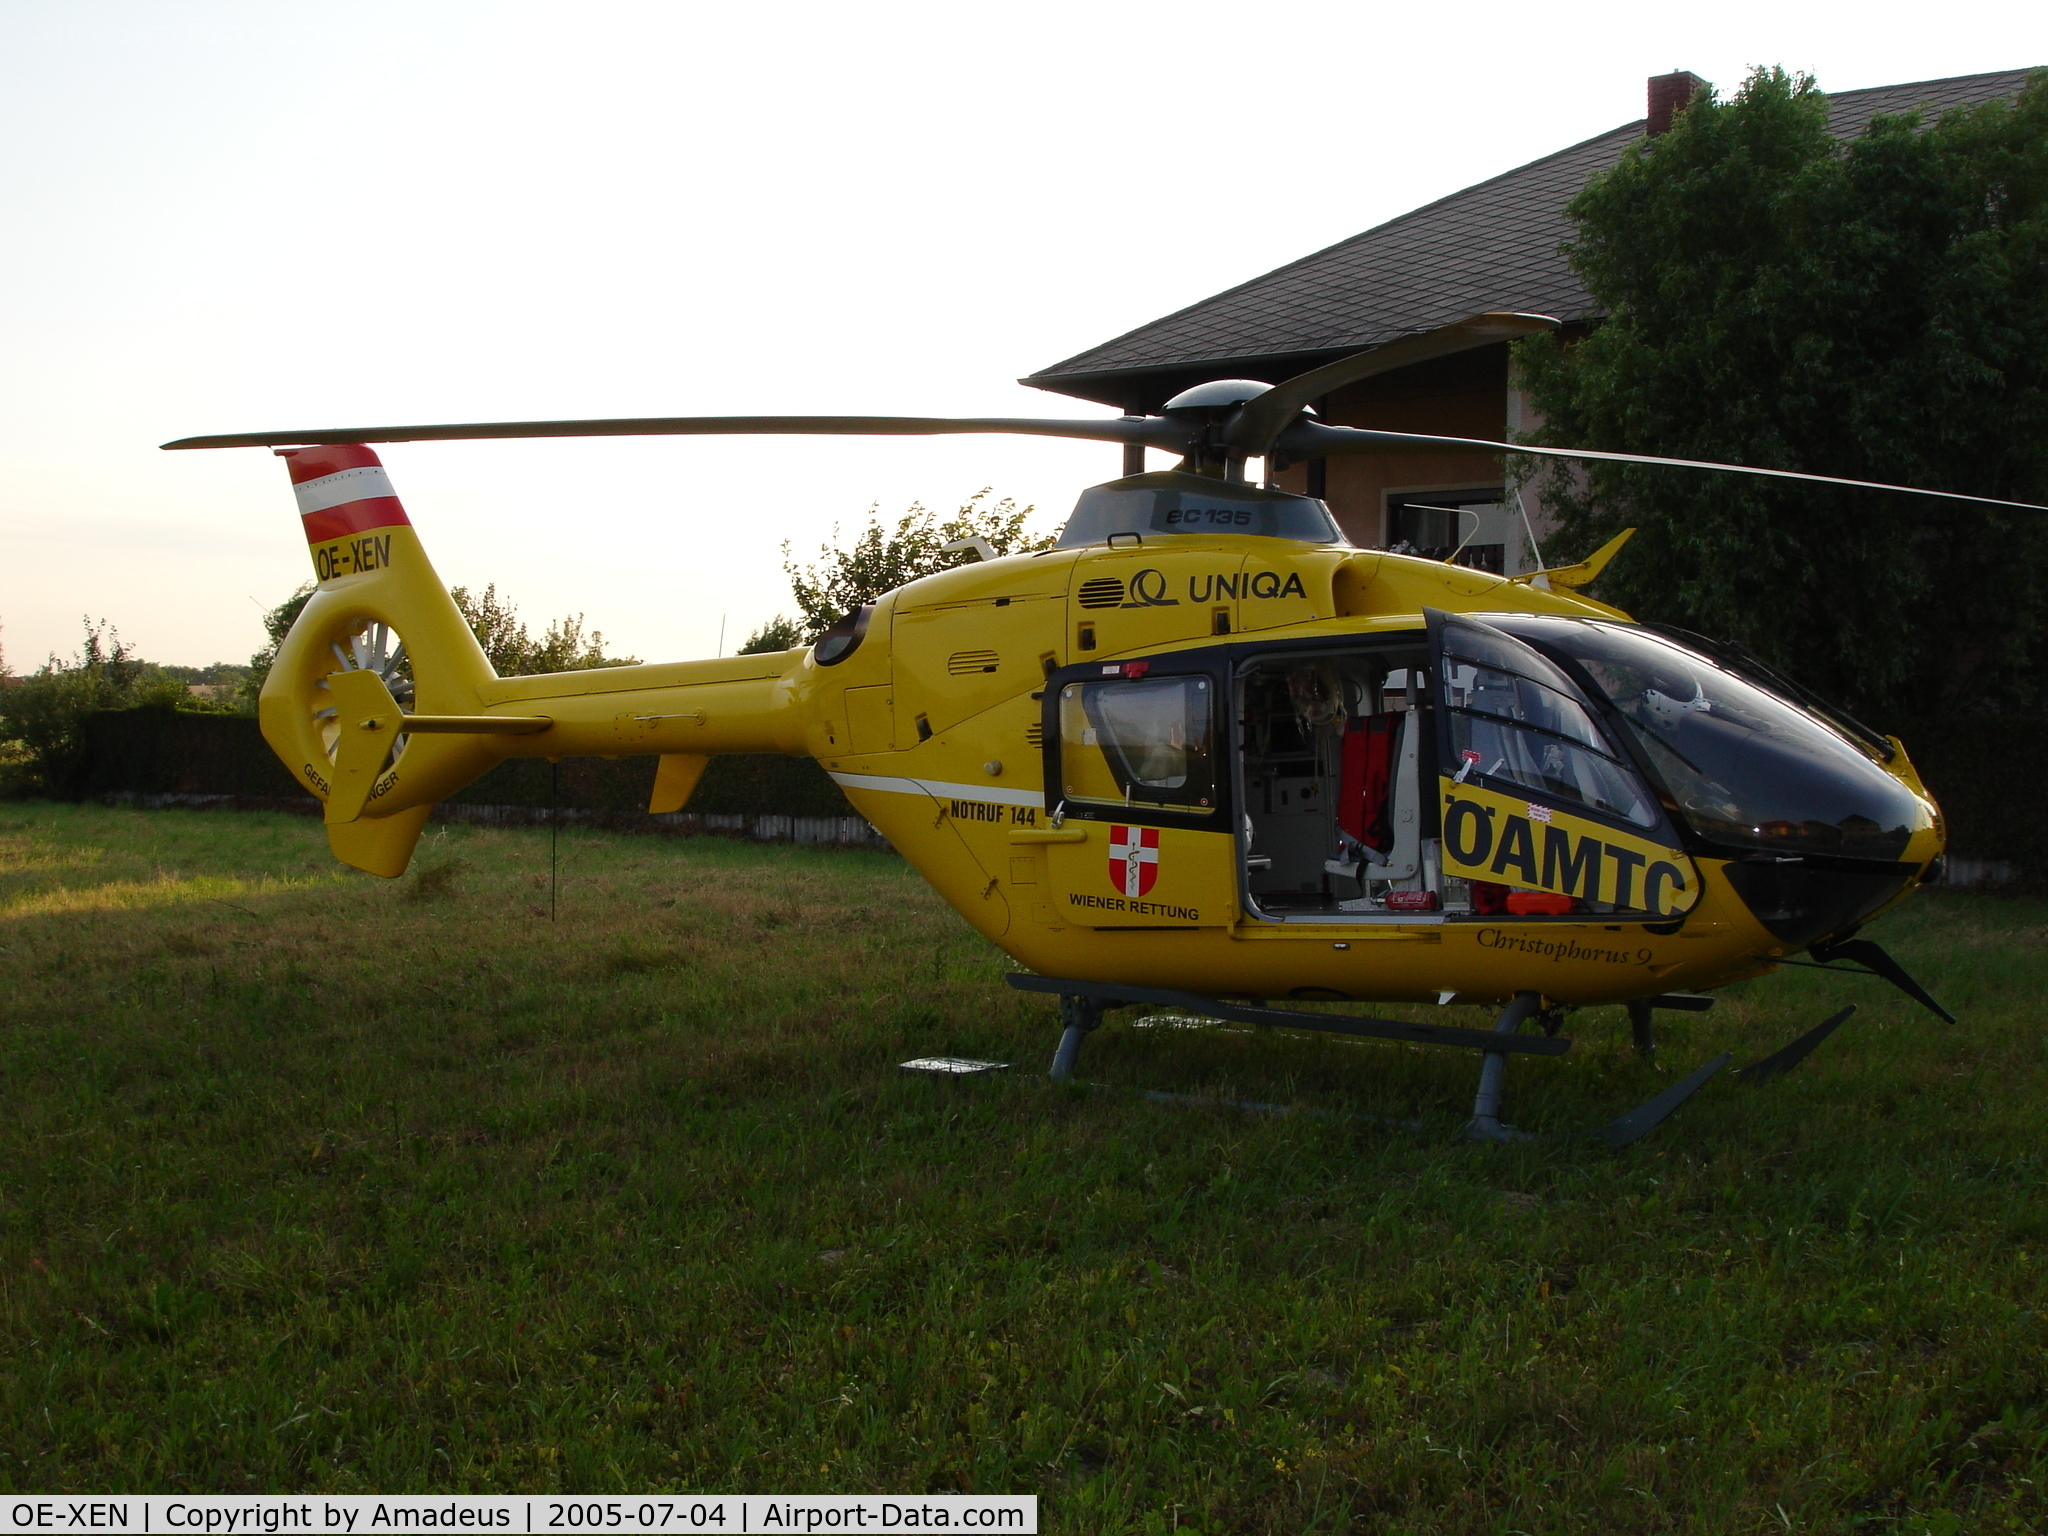 OE-XEN, 2001 Eurocopter EC-135T-2 C/N 0199, Rescue mission in my neighbourhood